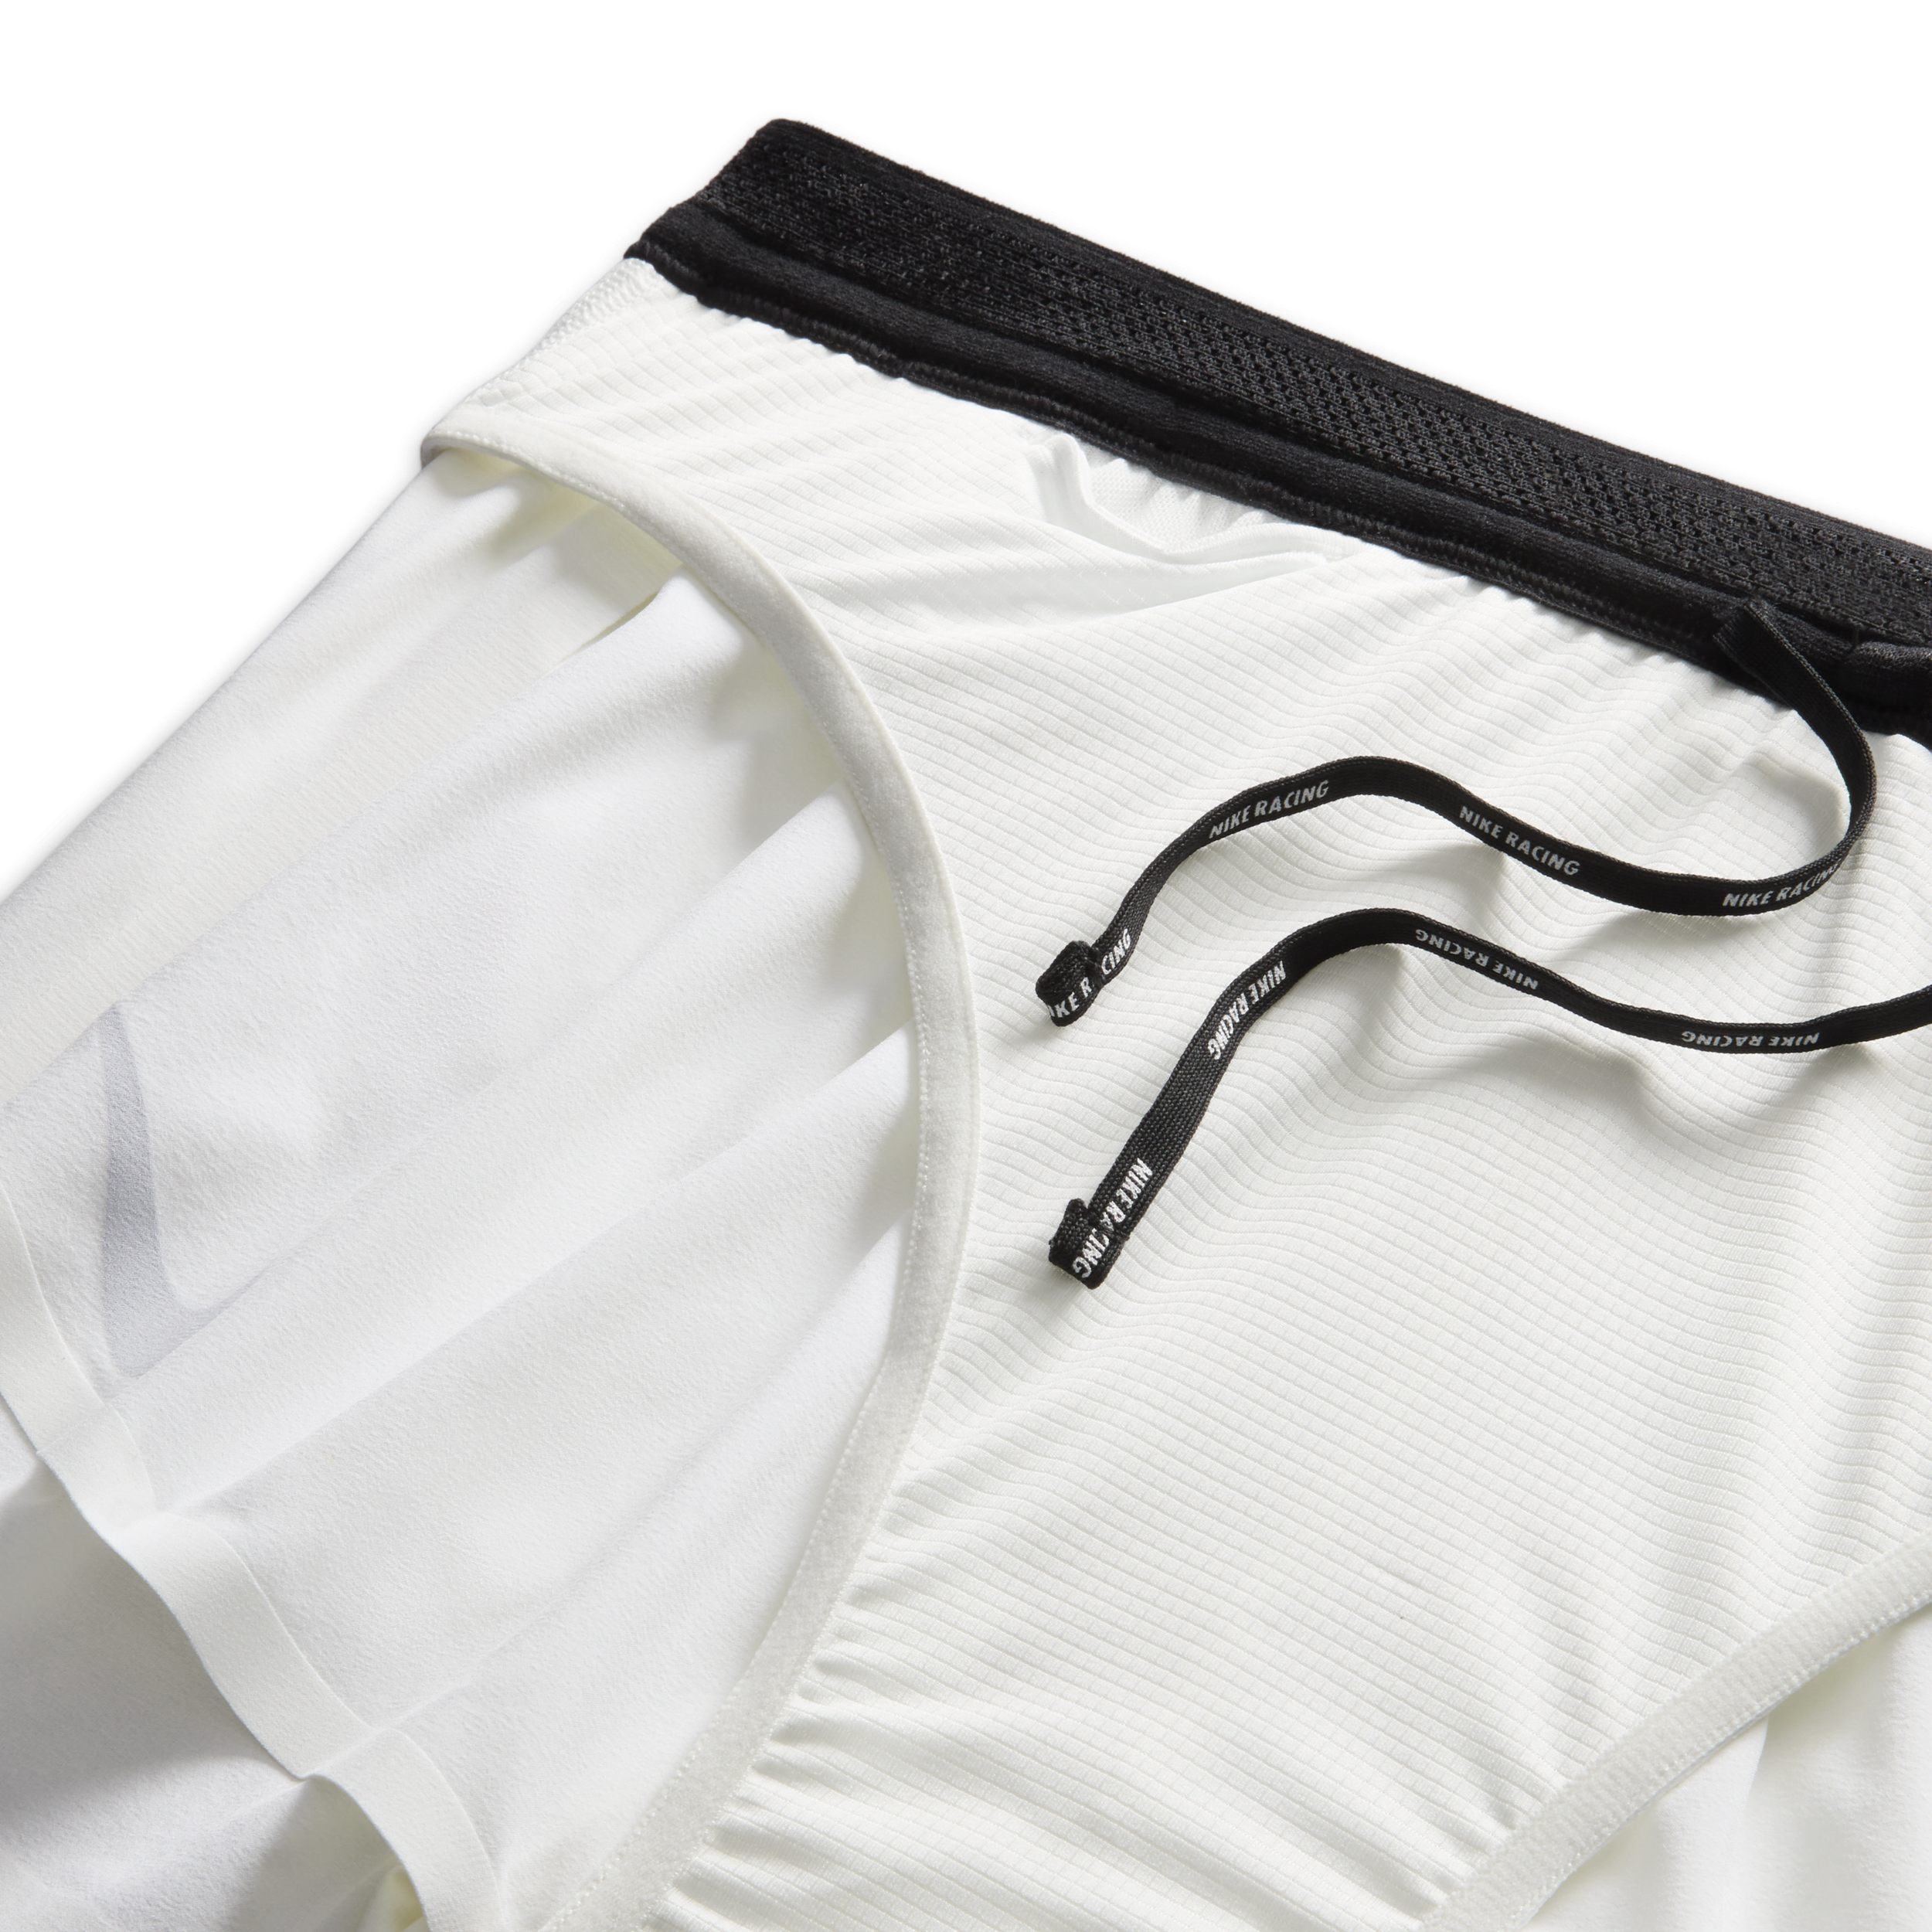 Nike AeroSwift Dri-FIT ADV hardloopshorts met binnenbroek voor heren (5 cm) Wit